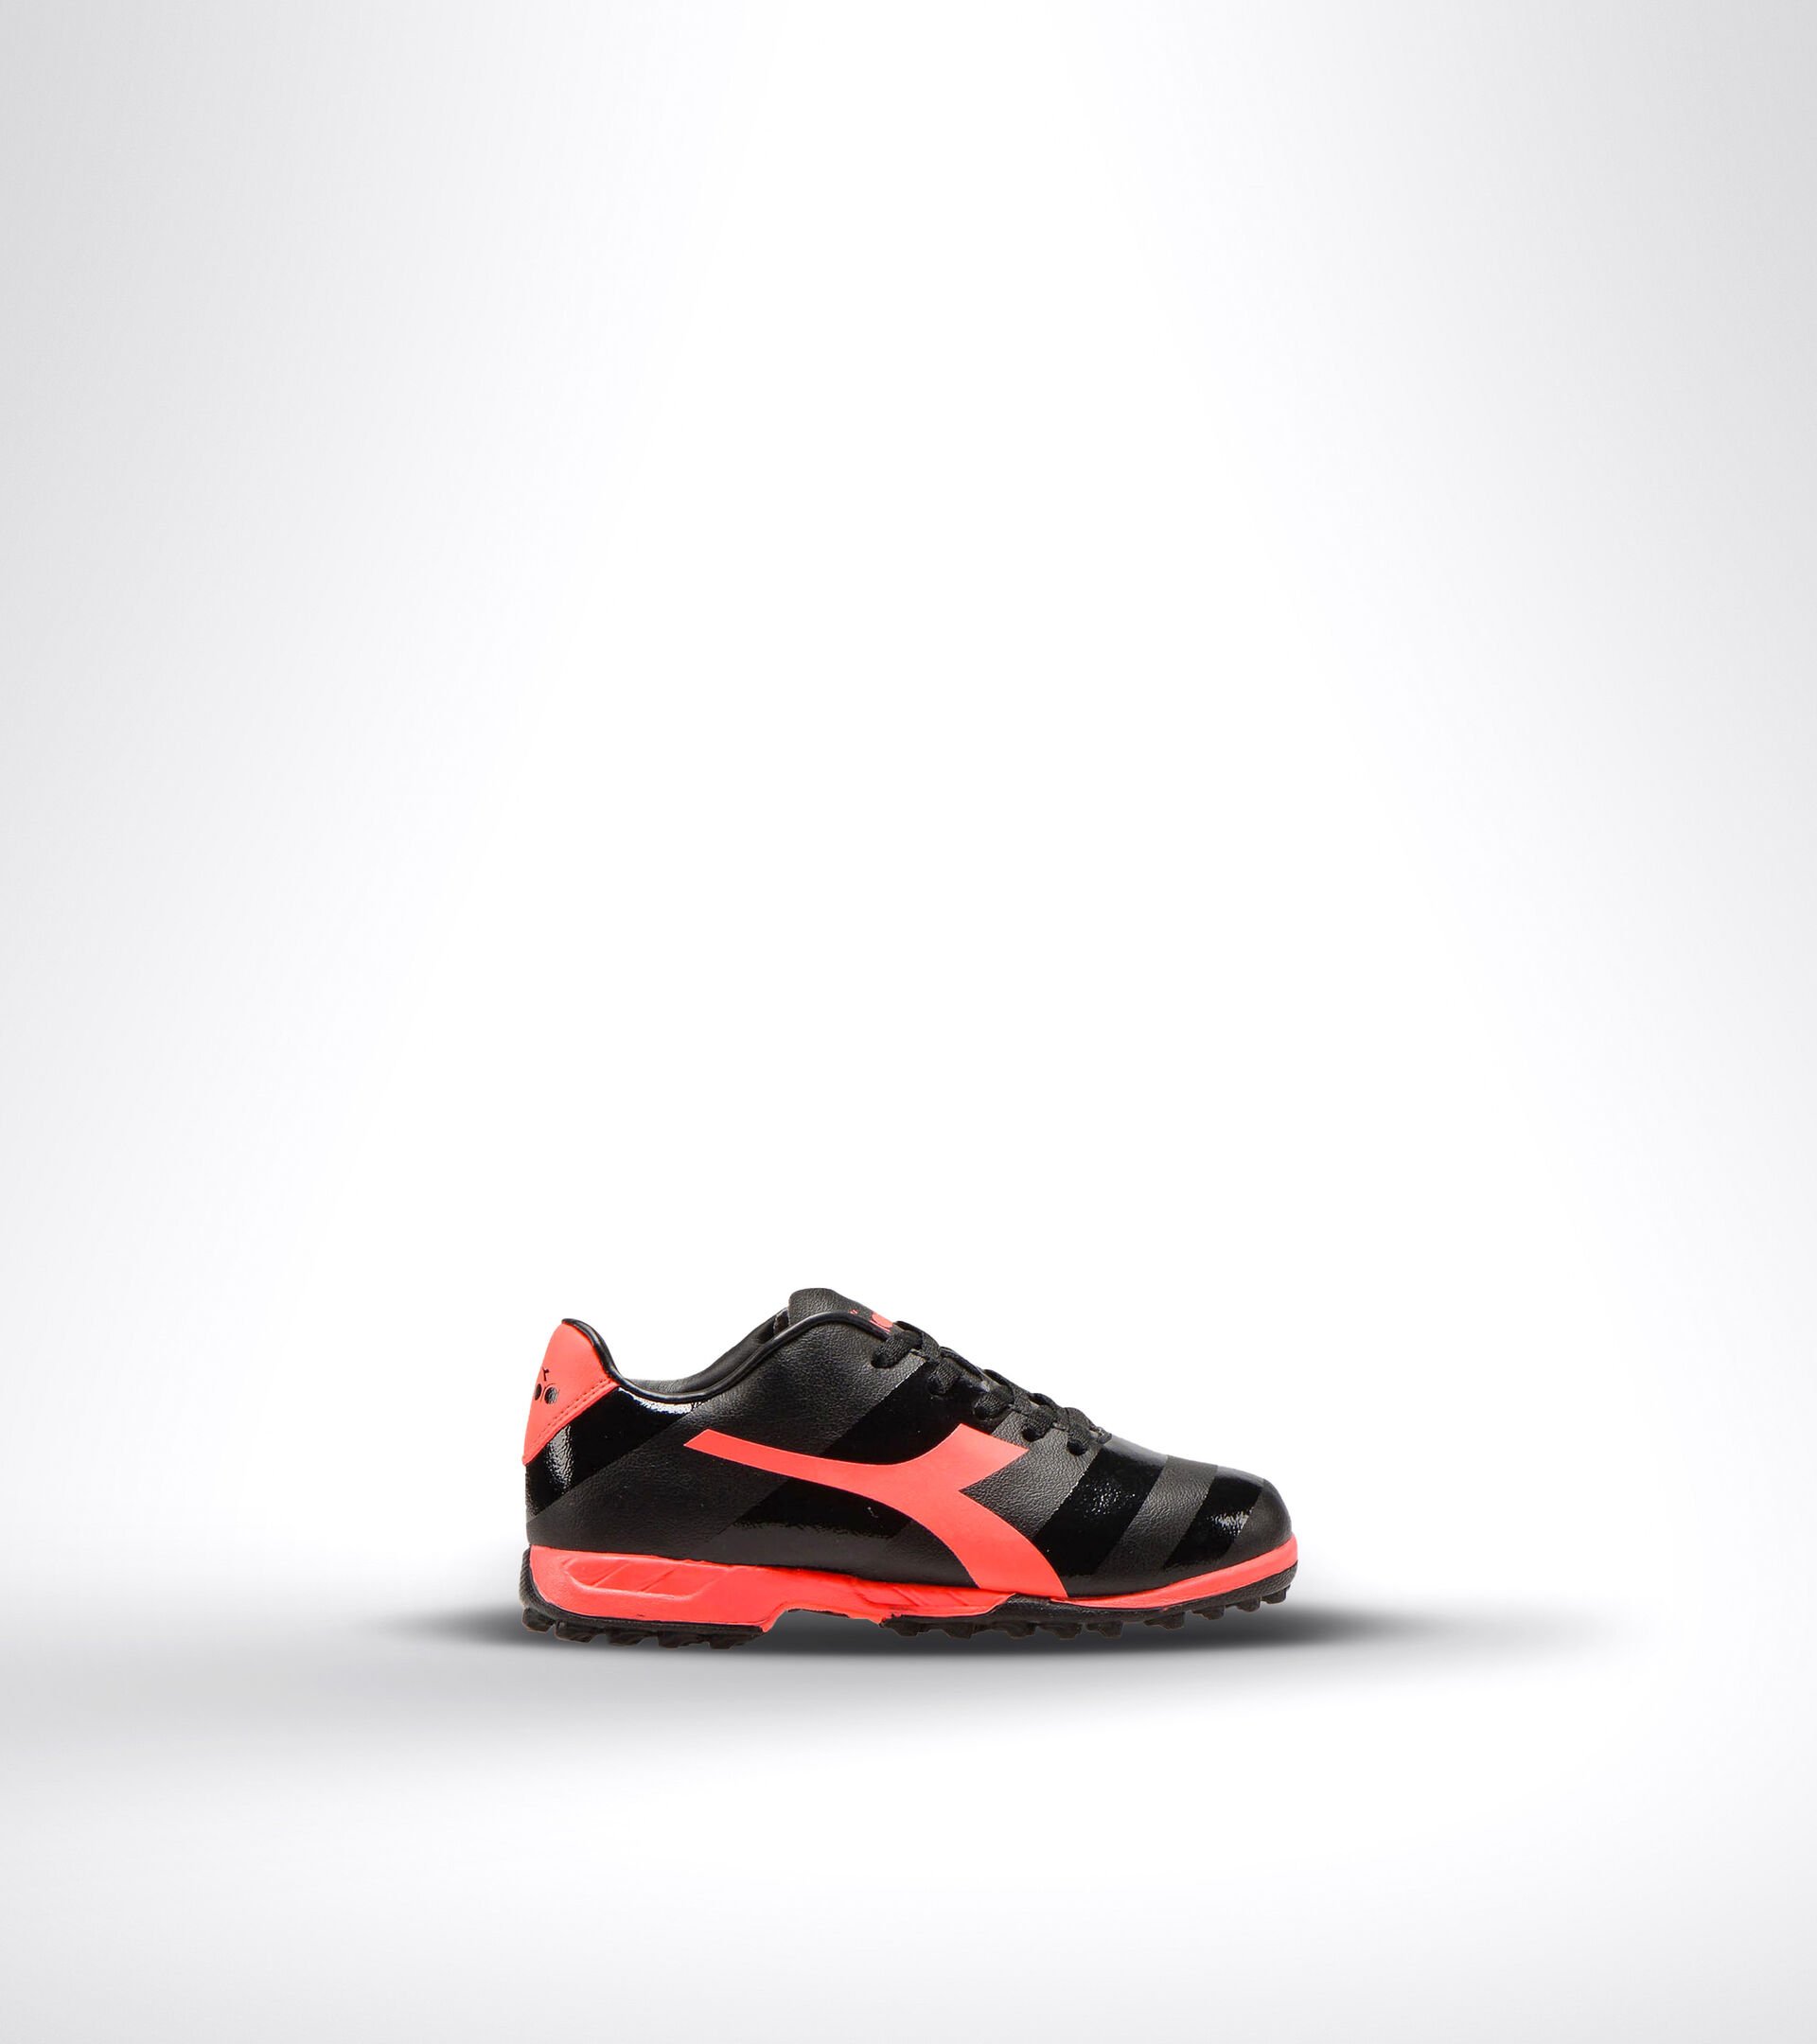 Chaussures de football pour terrains durs ou gazon synthétique - Unisexe Enfant RAPTOR R TF JR NERO/ROSSO FLUO - Diadora